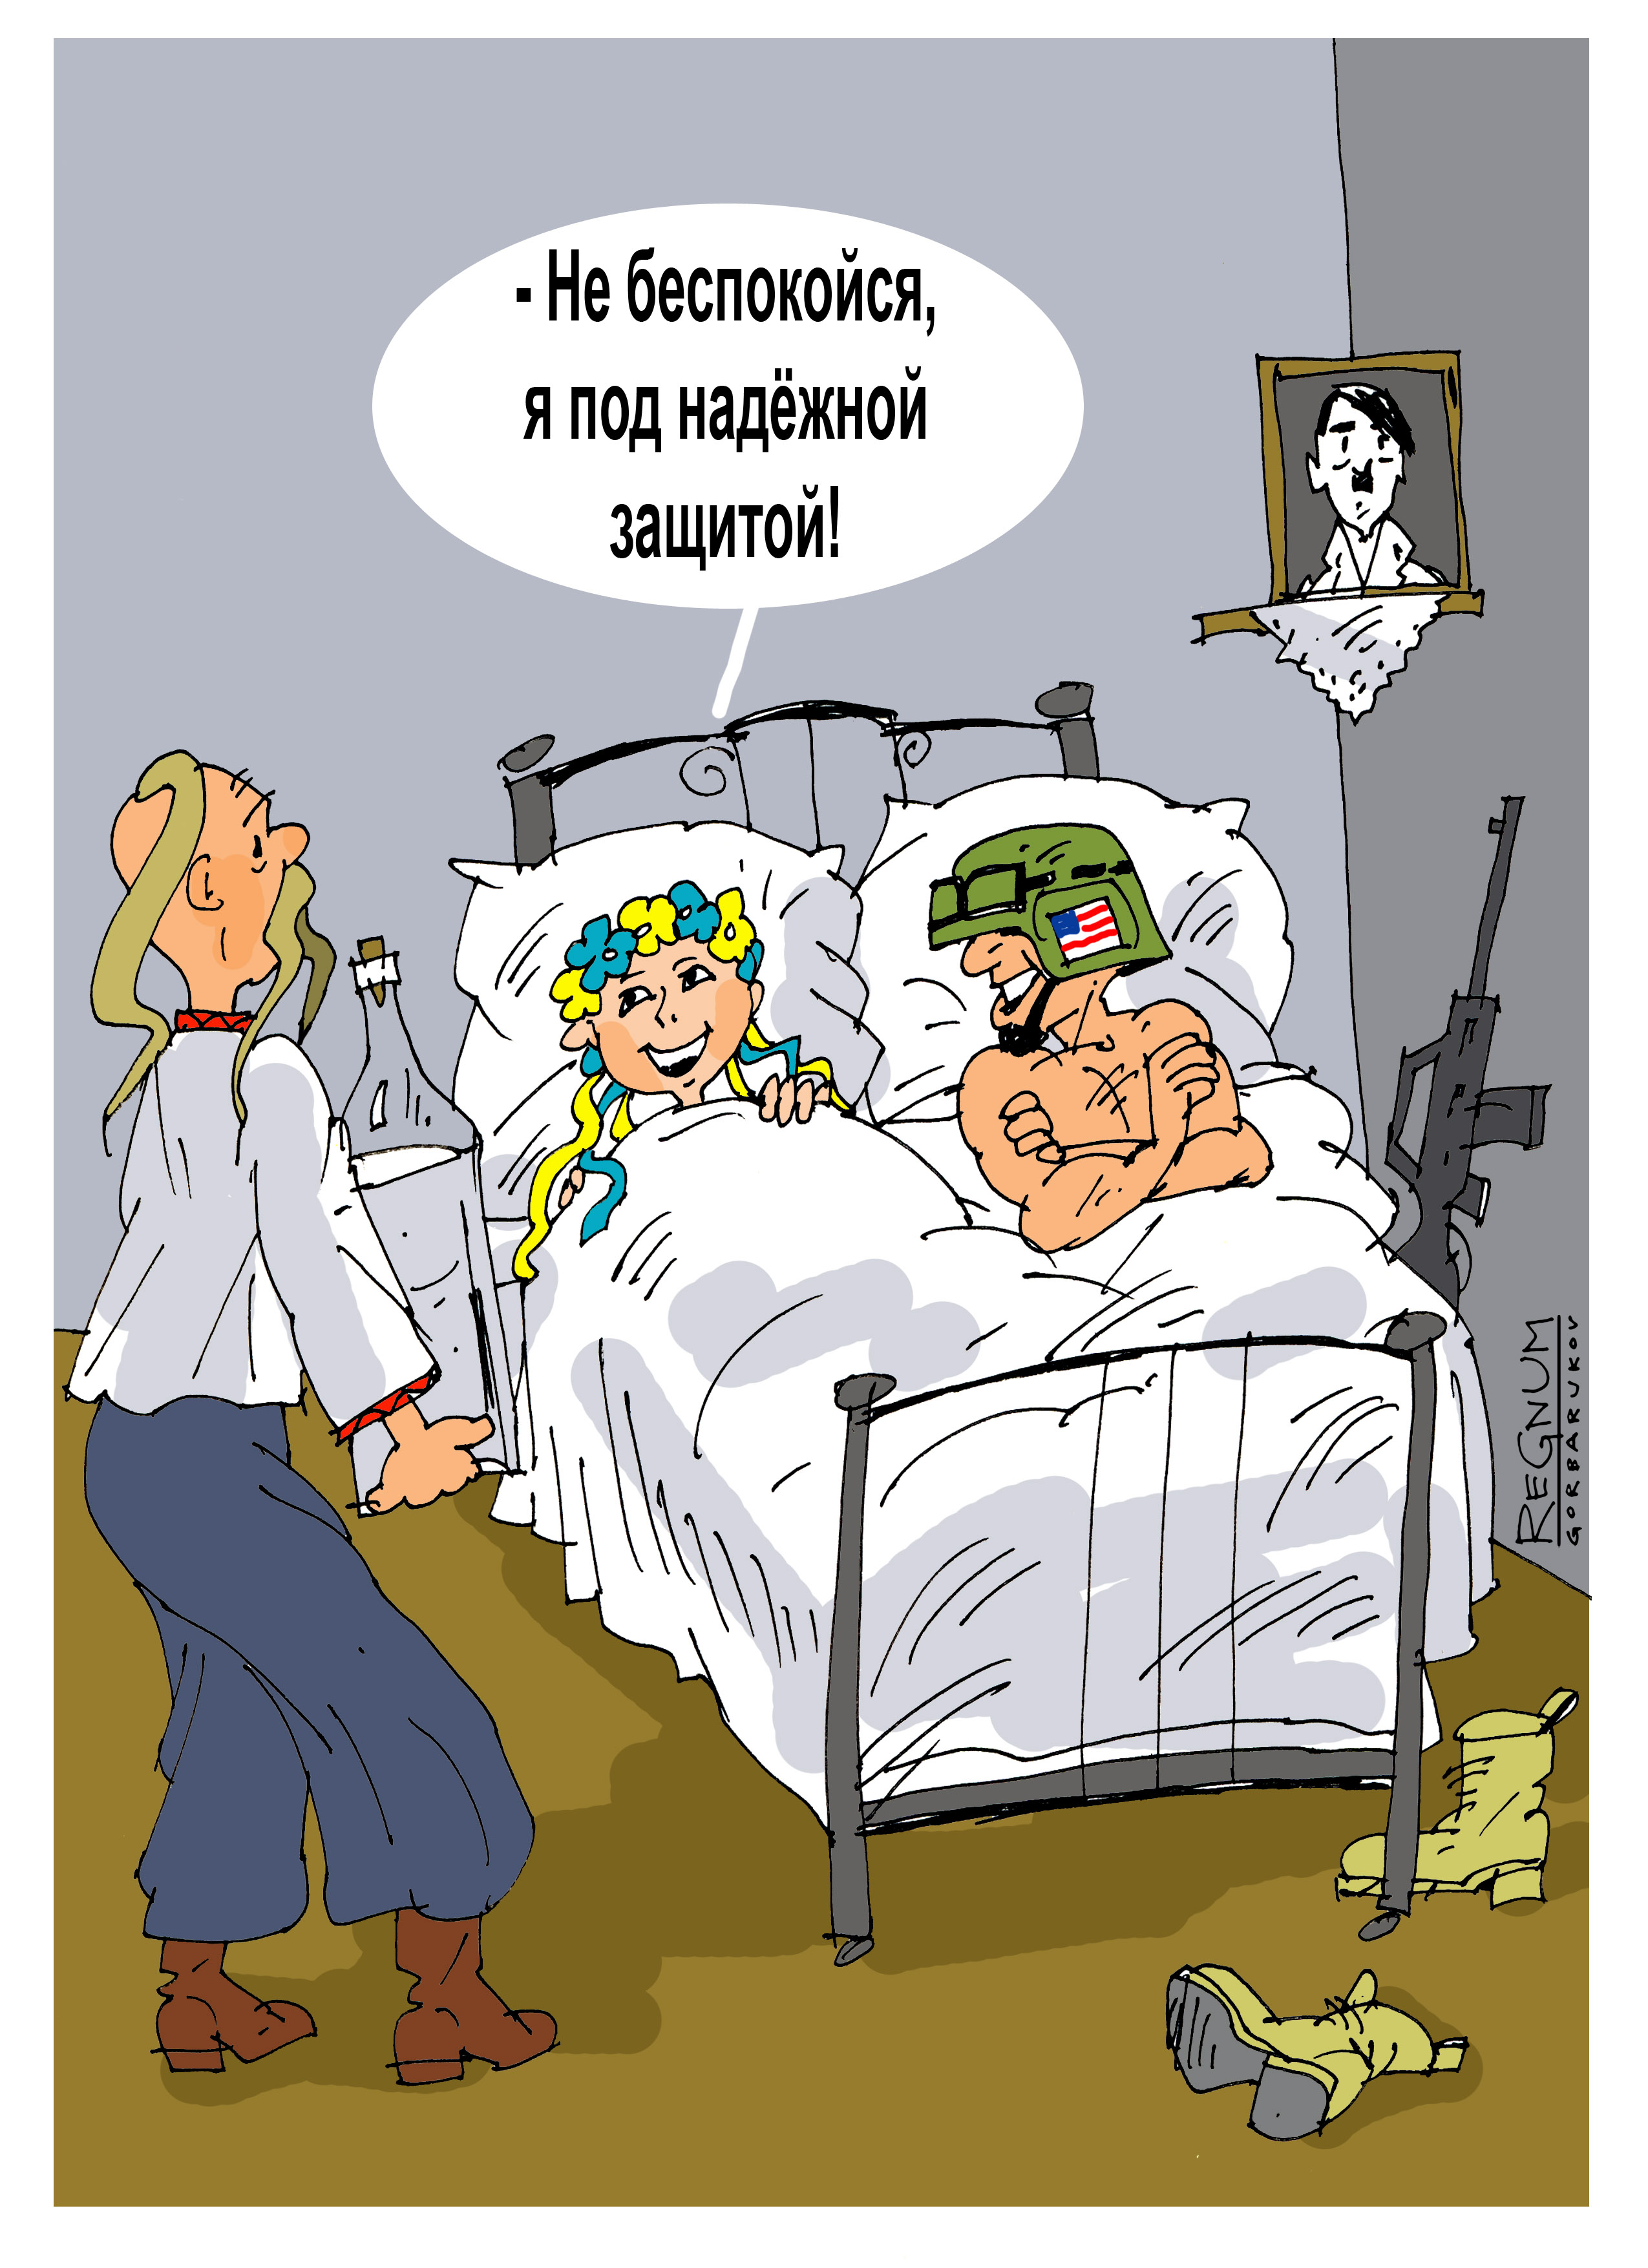 Объяснить поручить. Горбаруков карикатуры. Украинские мечты о репарациях. Под надежной защитой прикол.